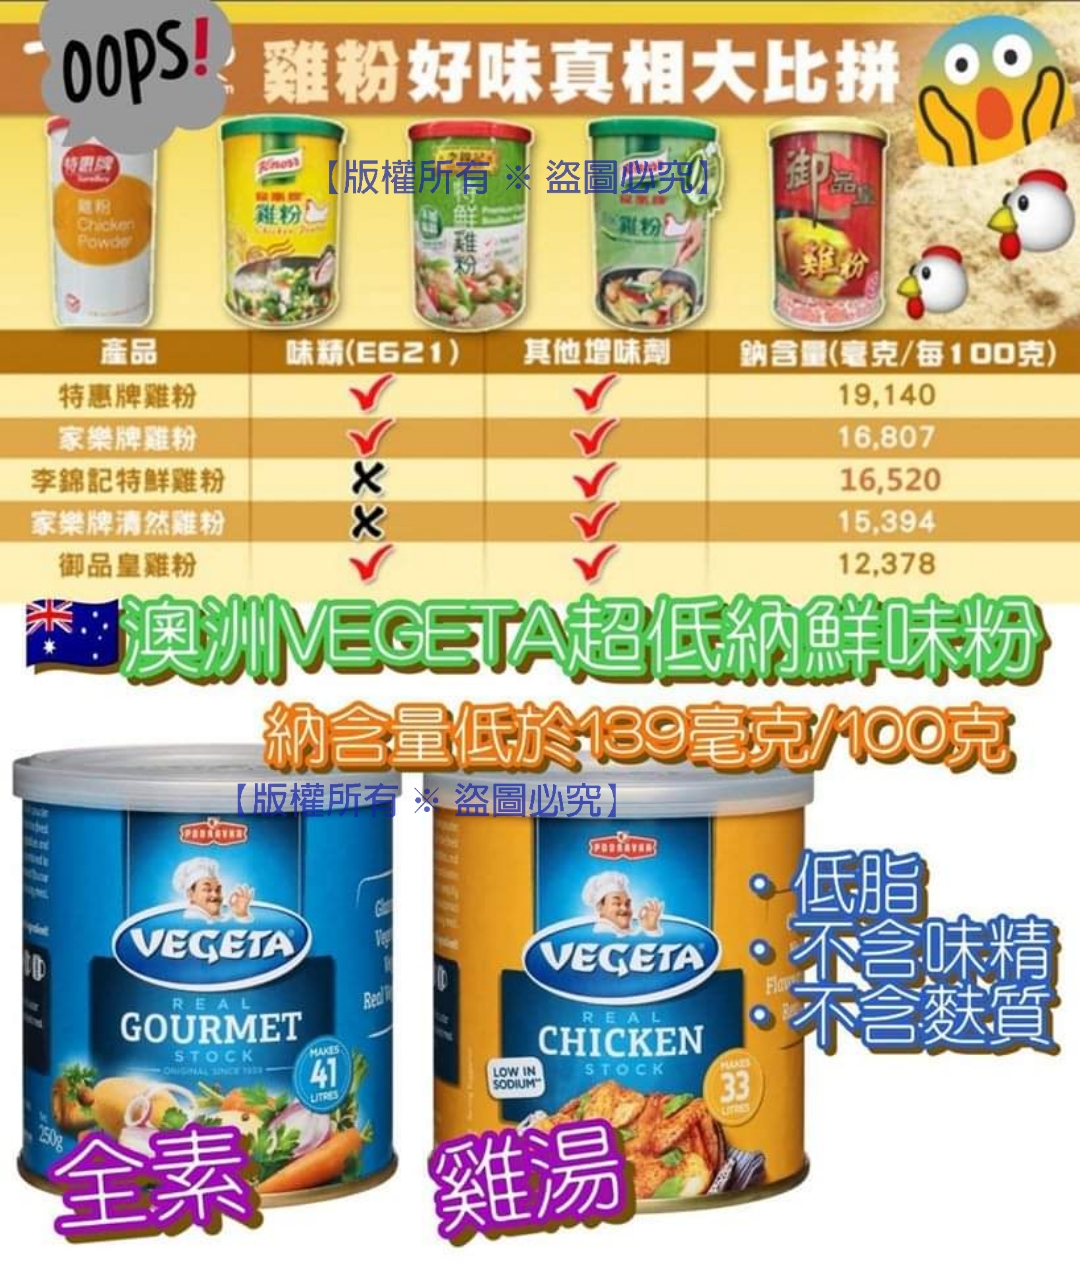 澳洲 VEGETA 超低納鮮味粉 (B) 橙色 雞湯風味 200g